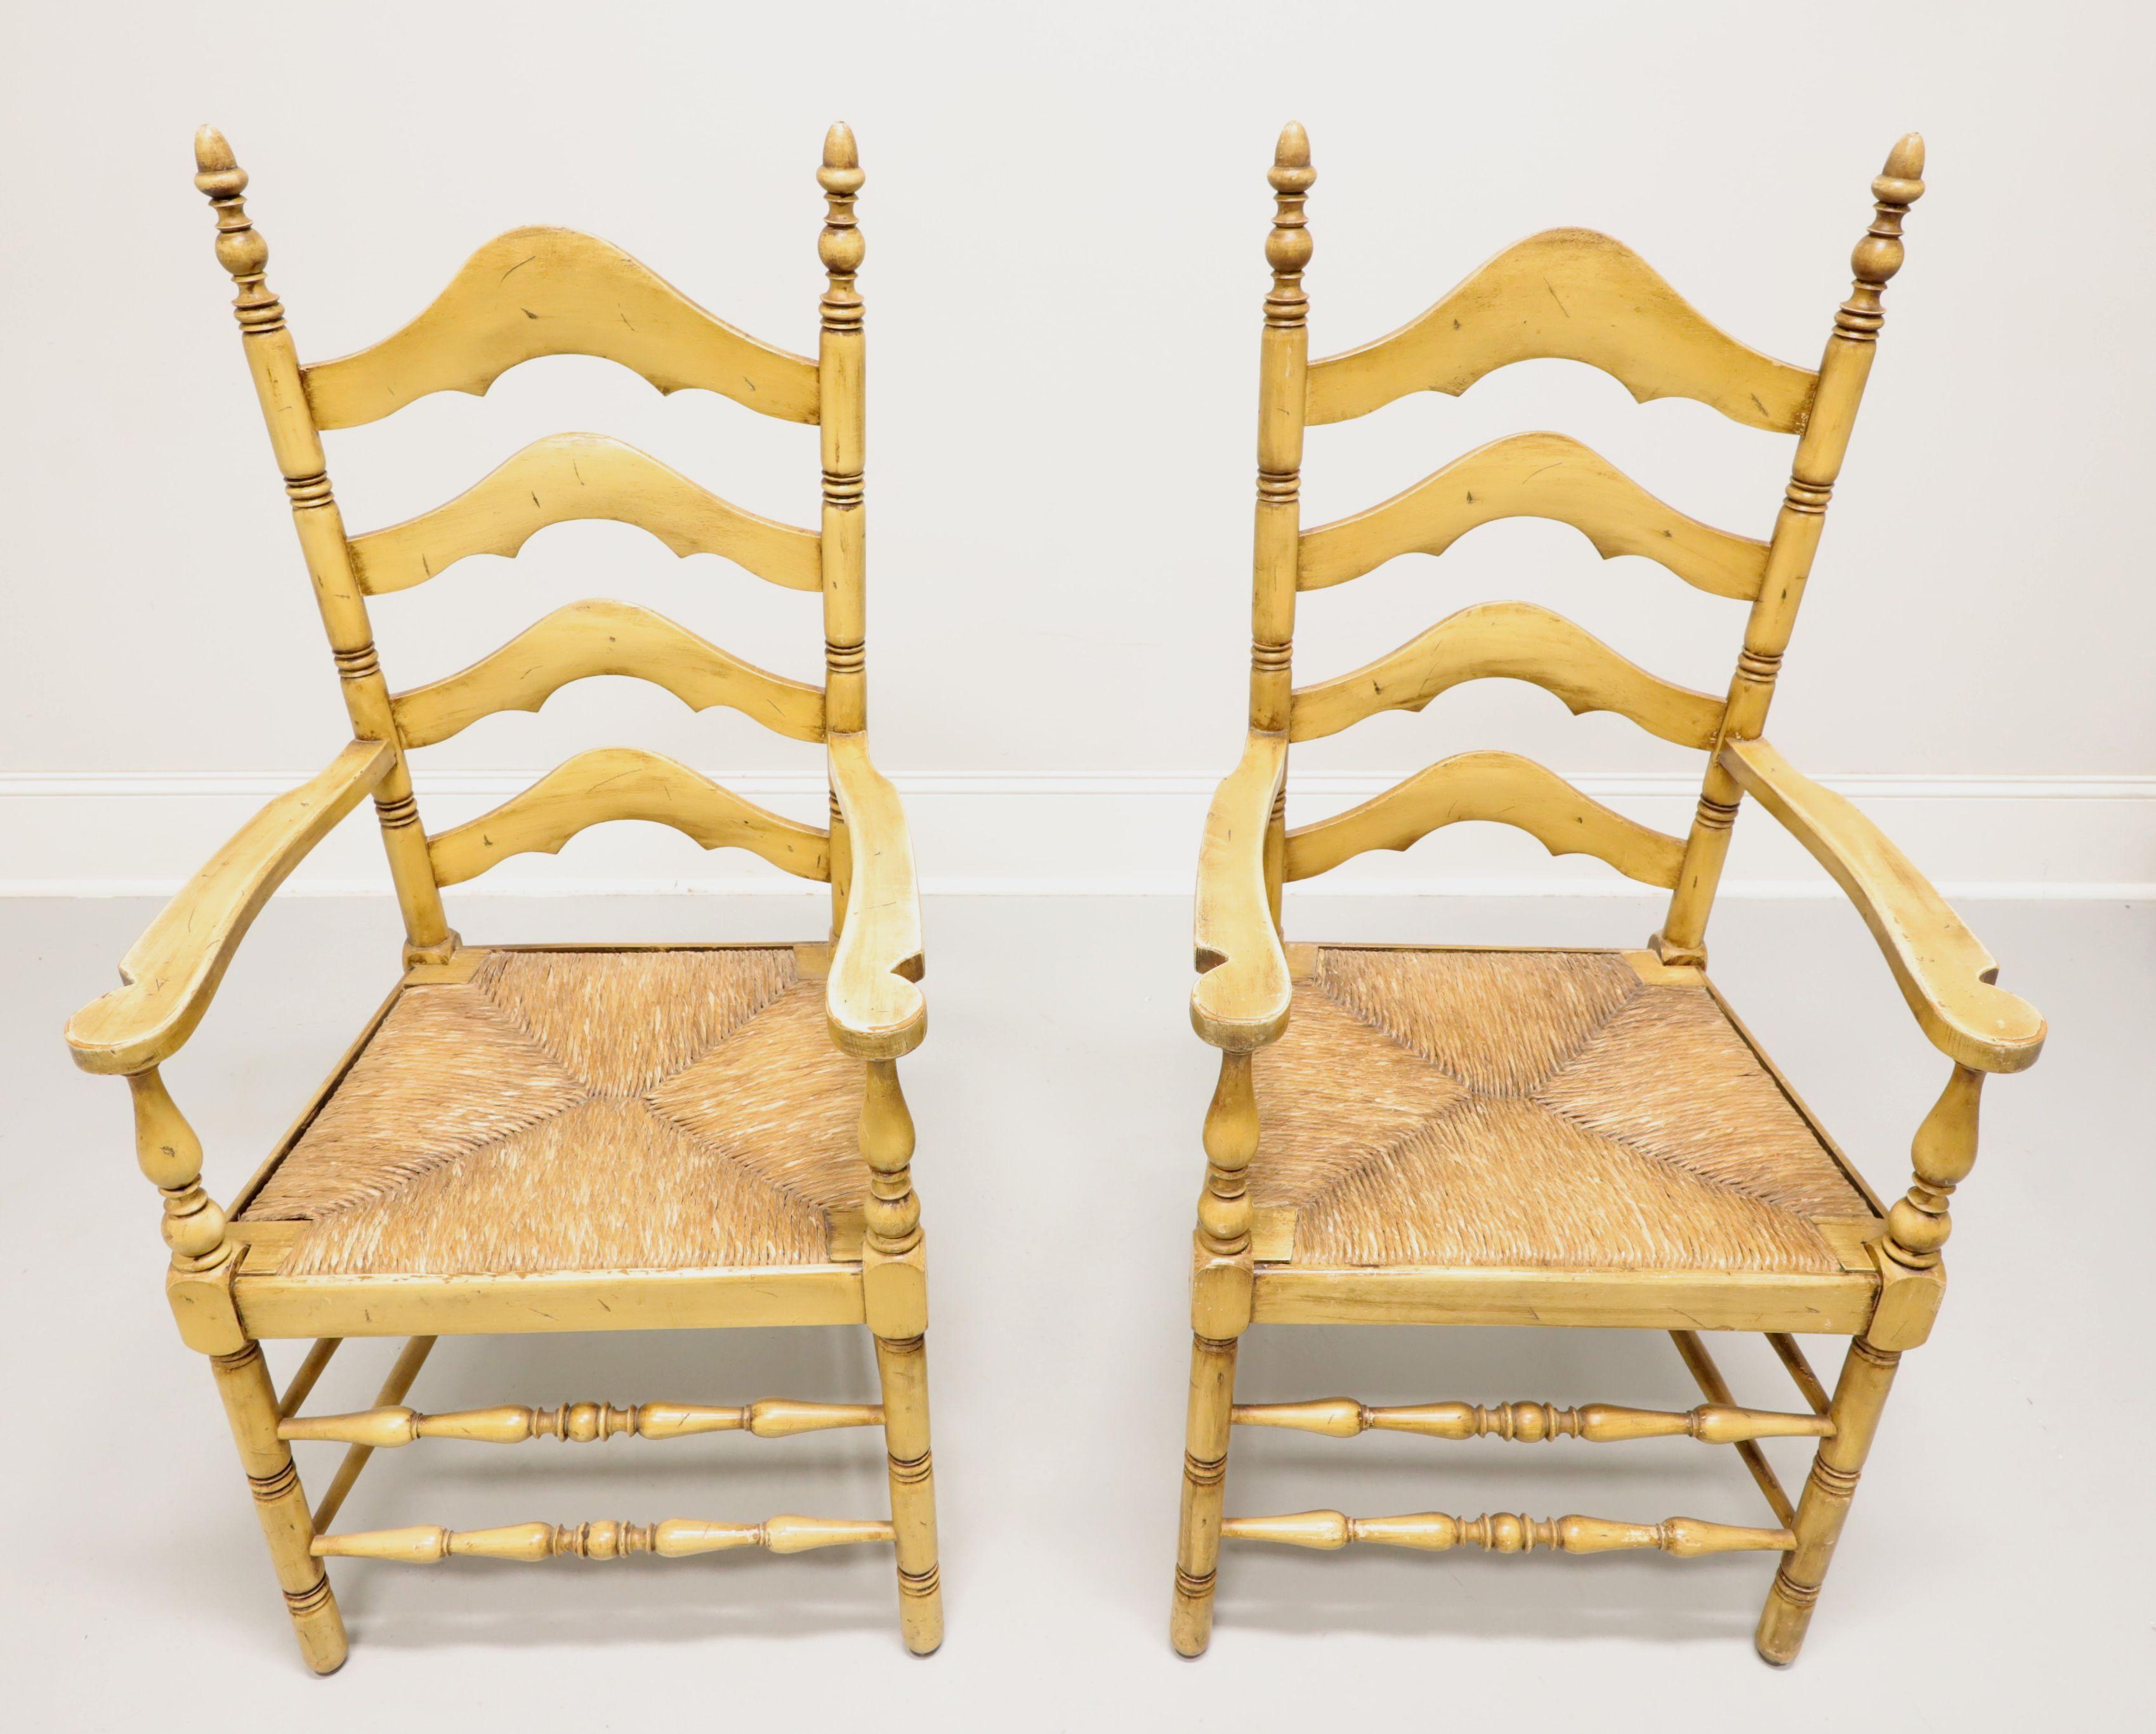 Une paire de fauteuils de salle à manger de style Cottage / Farmhouse par Cape Ann Chairs. En érable, le dossier est sculpté en forme d'échelle, les montants sont coiffés de fleurons, les accoudoirs sont légèrement incurvés et les supports tournés,